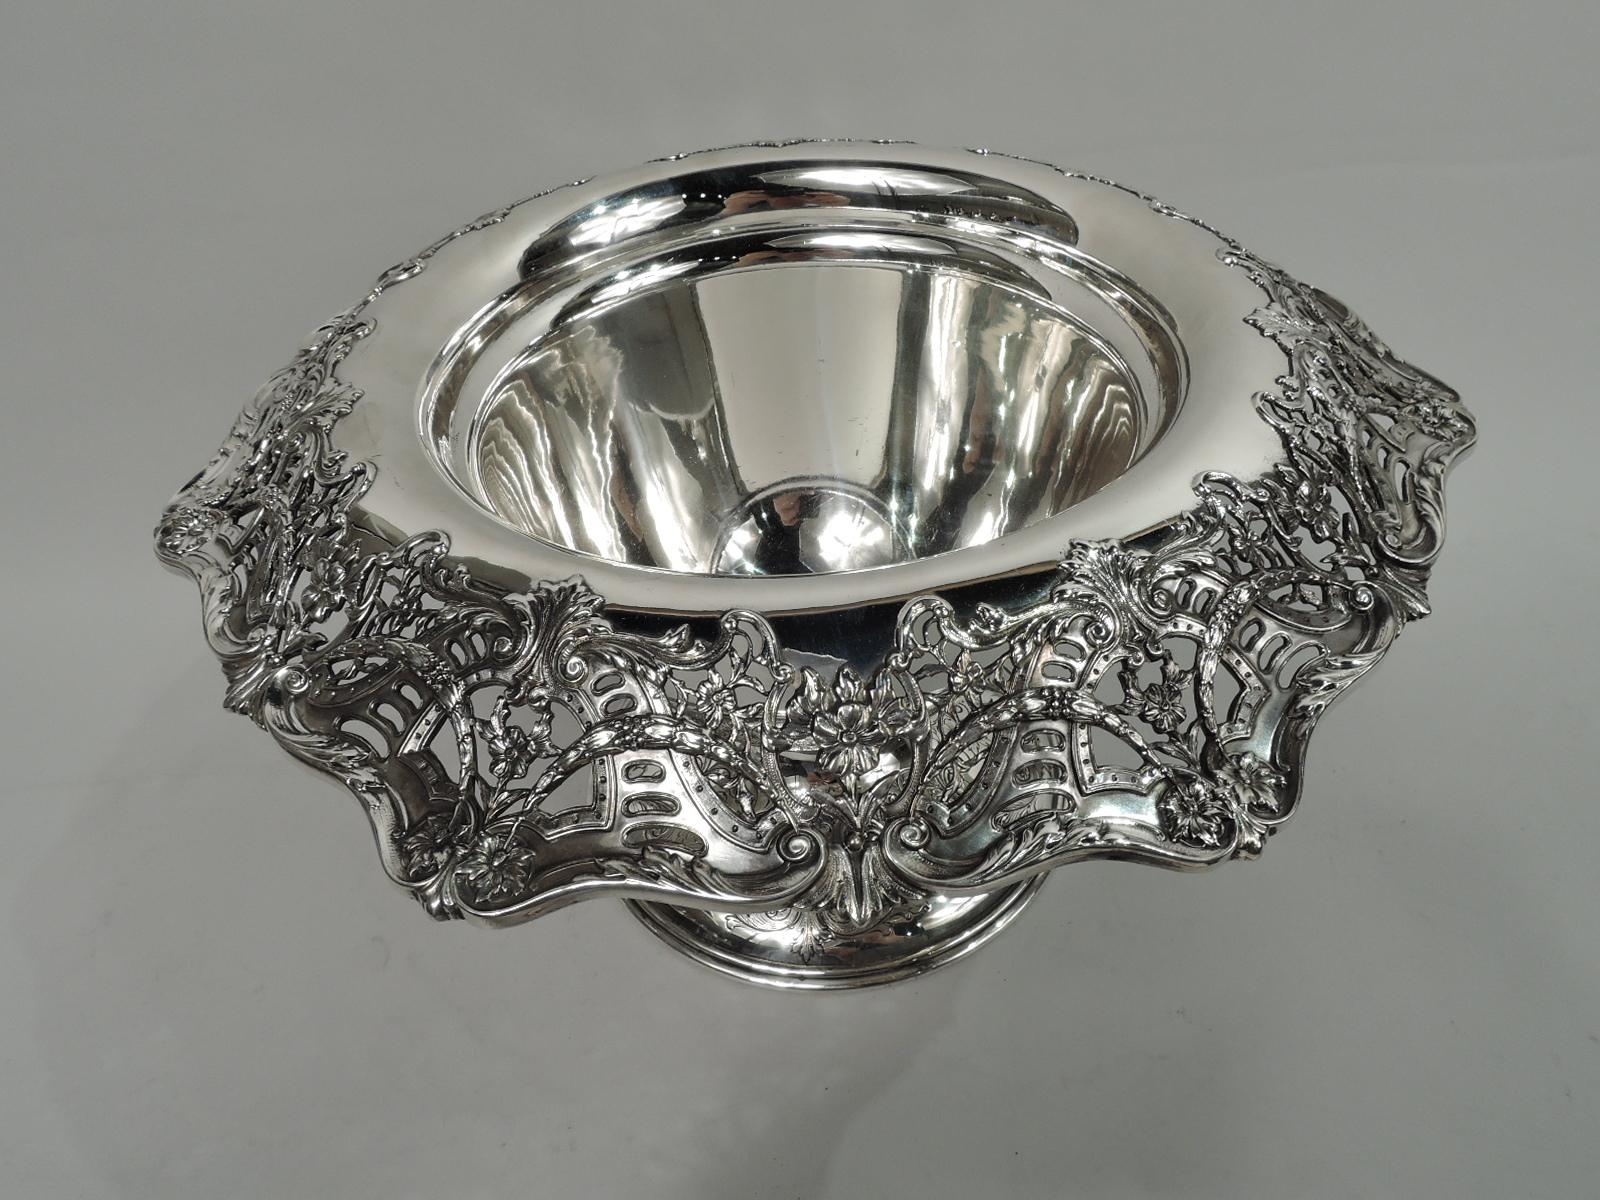 Regency Revival Antique American Edwardian Regency Sterling Silver Centerpiece Bowl